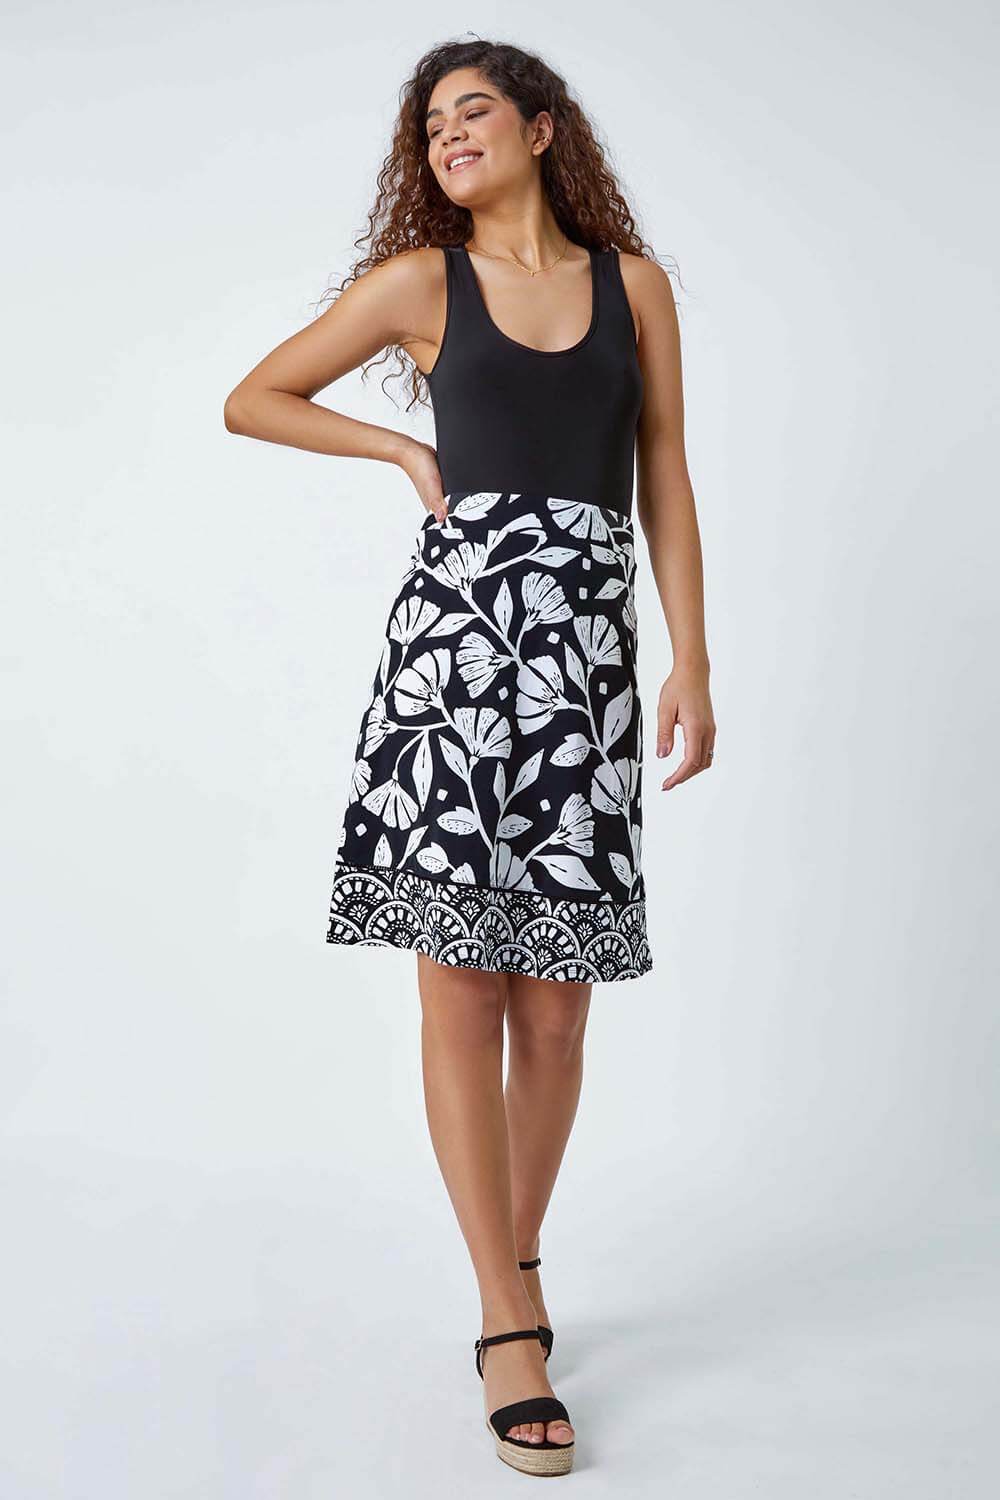 Black Cotton Blend Floral Stretch Skirt, Image 2 of 5